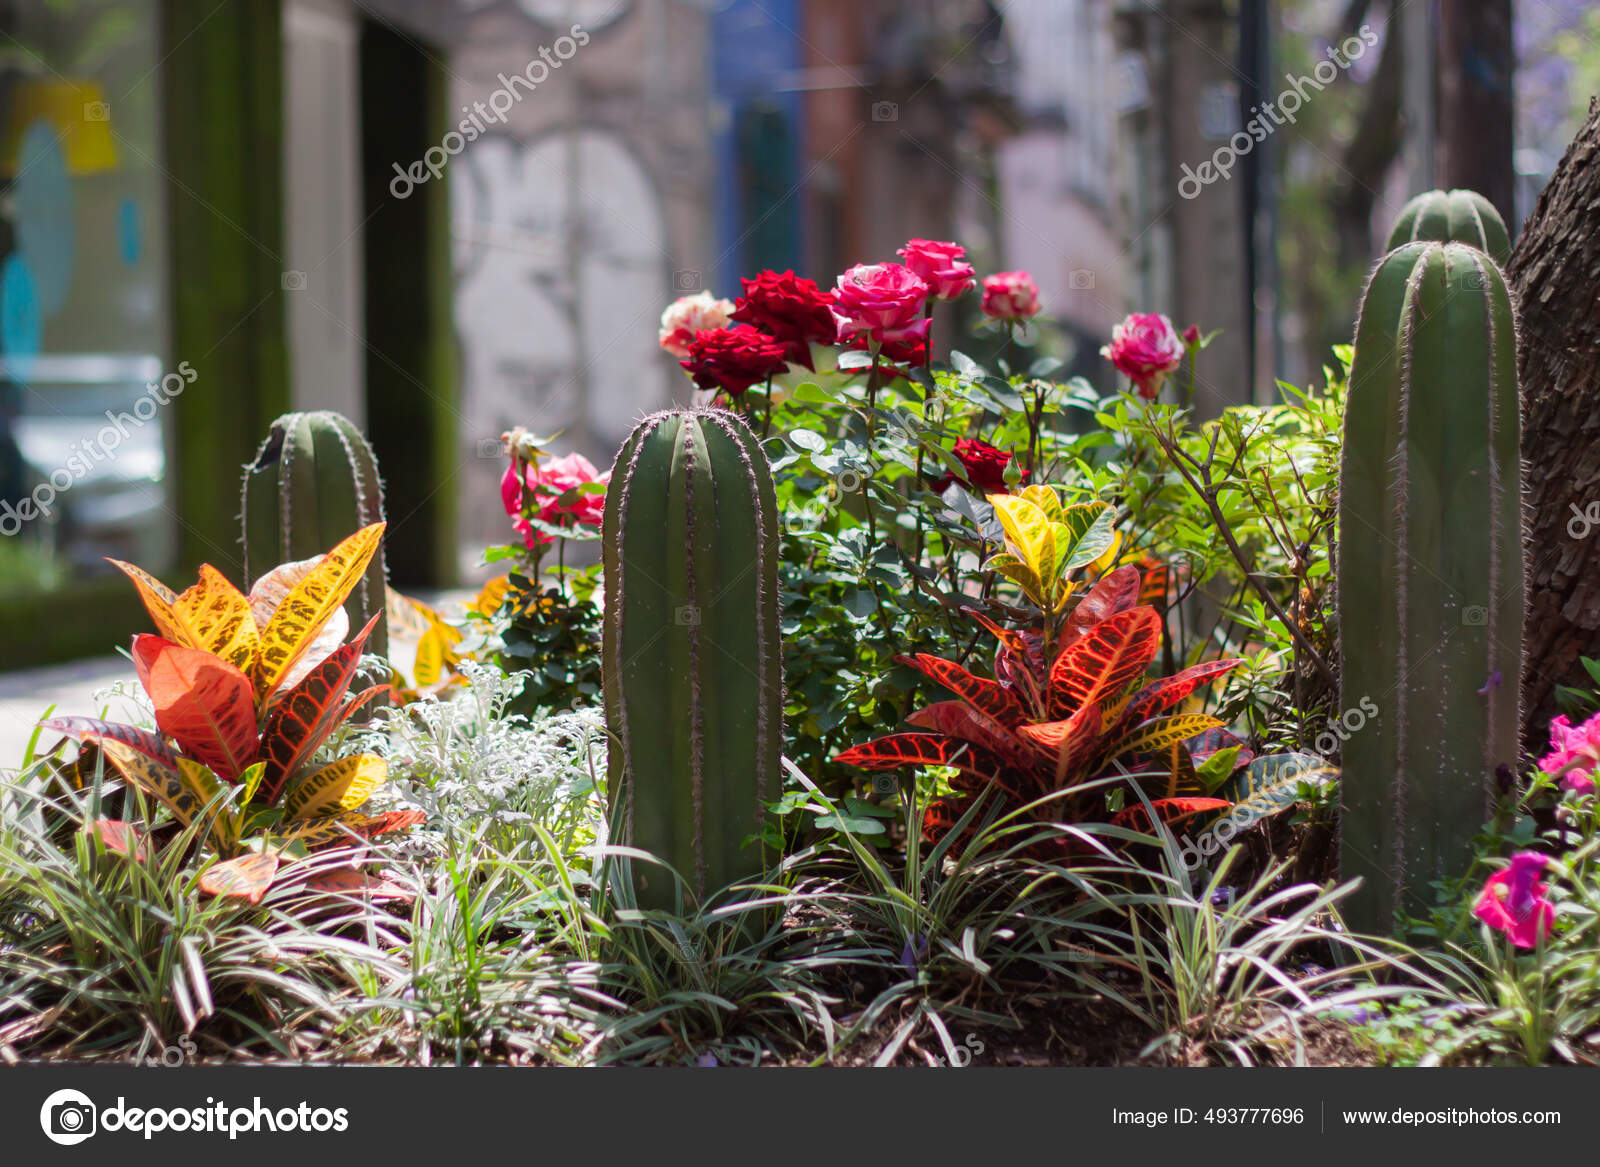 Las Flores Los Cactos Jardín Exterior: fotografía de stock © Wirestock  #493777696 | Depositphotos